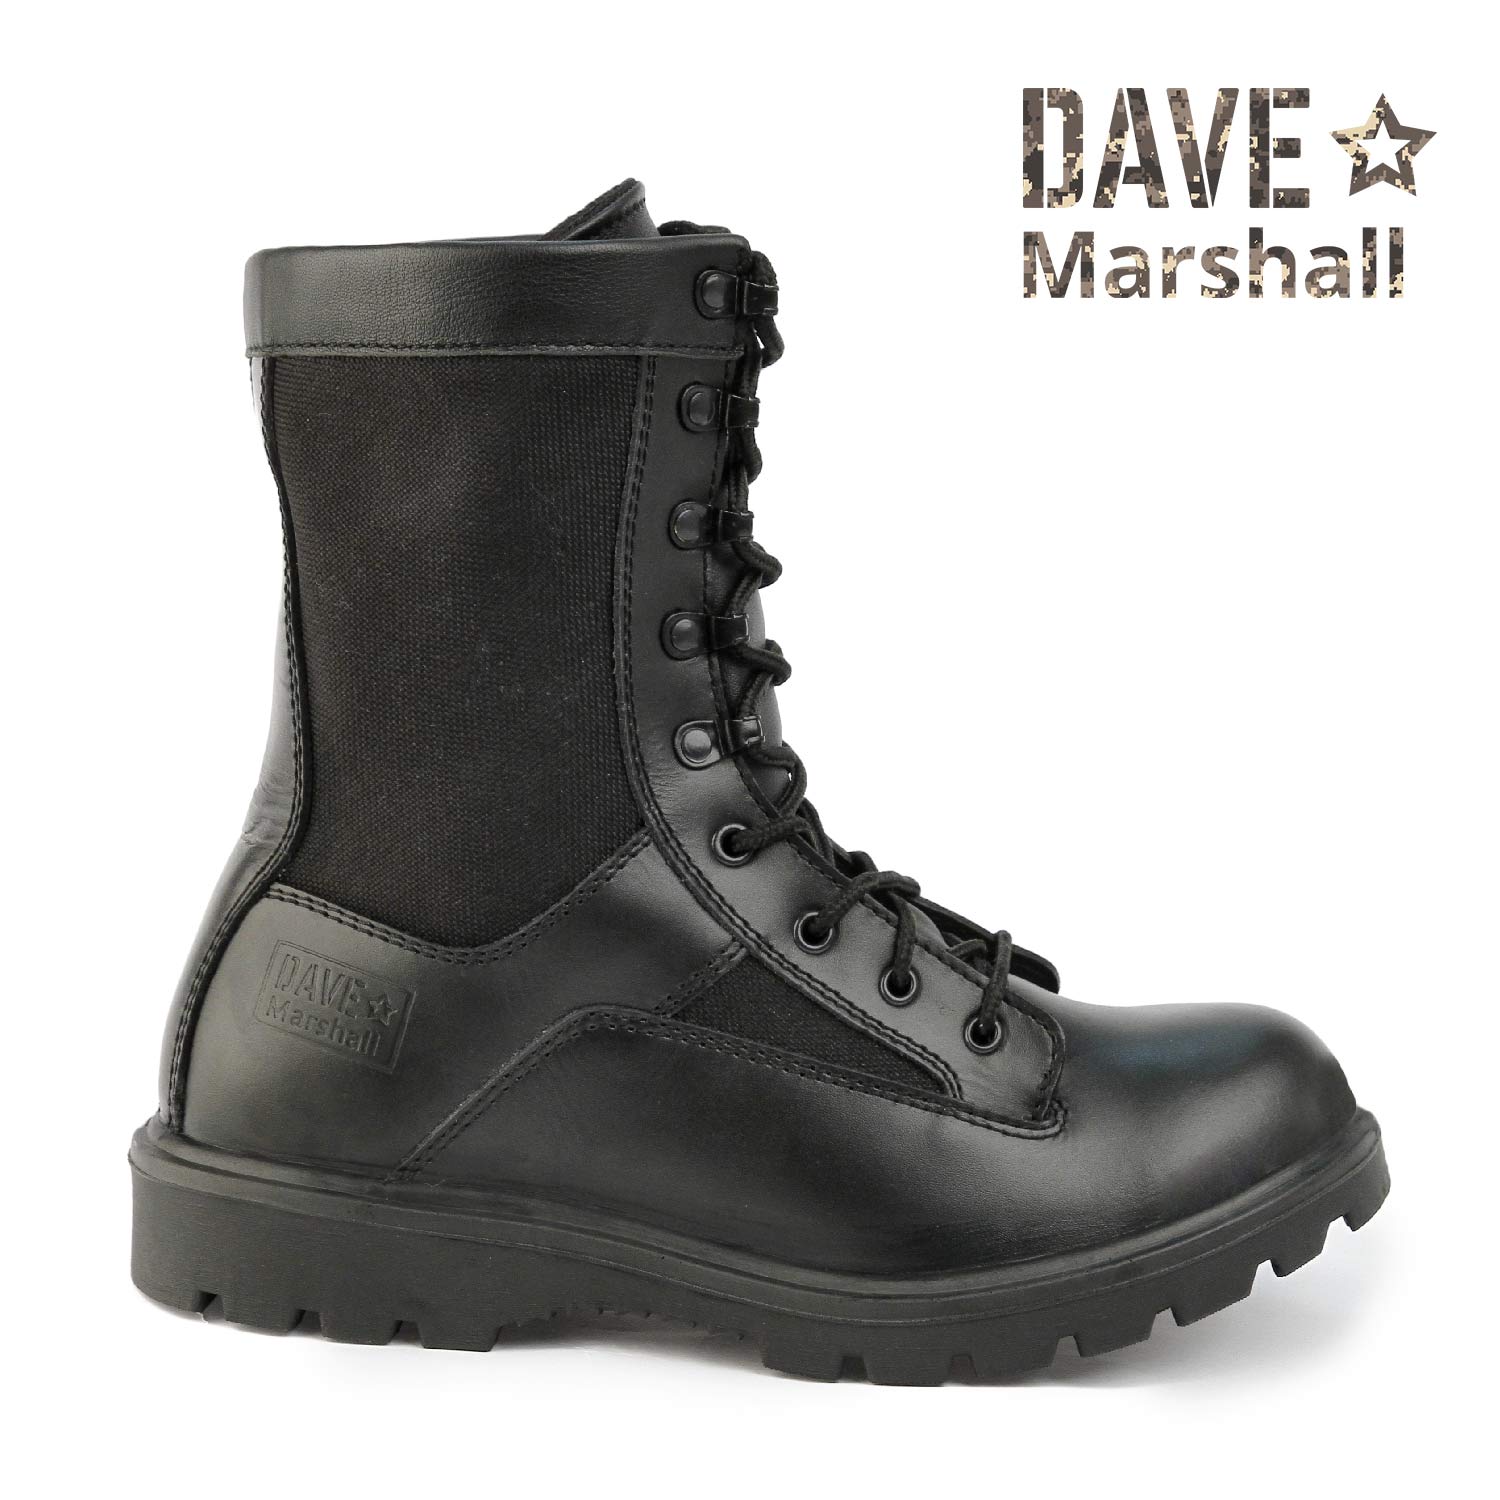 Ботинки Dave Marshall Howard СG-8